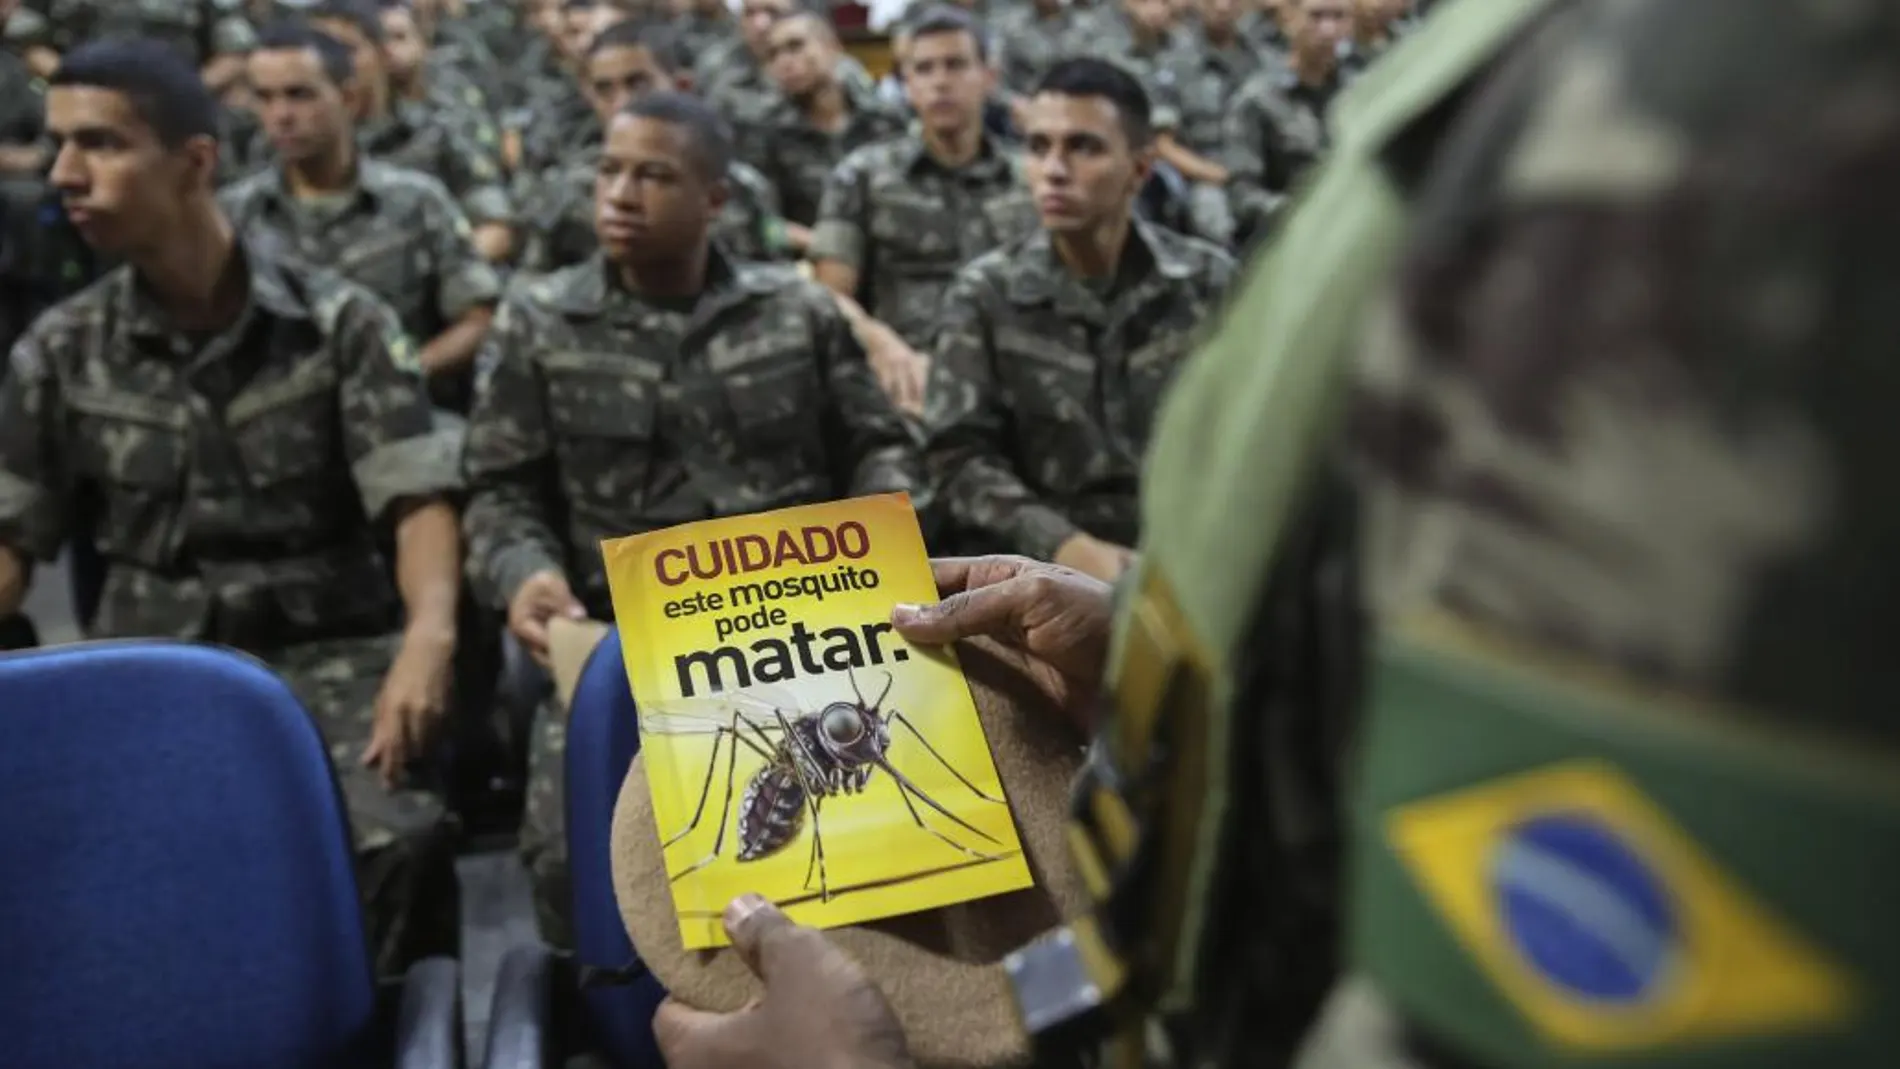 Soldados del Ejército brasileño asisten a una conferencia hoy durante una movilización de limpieza en el interior del cuartel para eliminar los criaderos del mosquito Aedes Aegypt en Sao Paulo